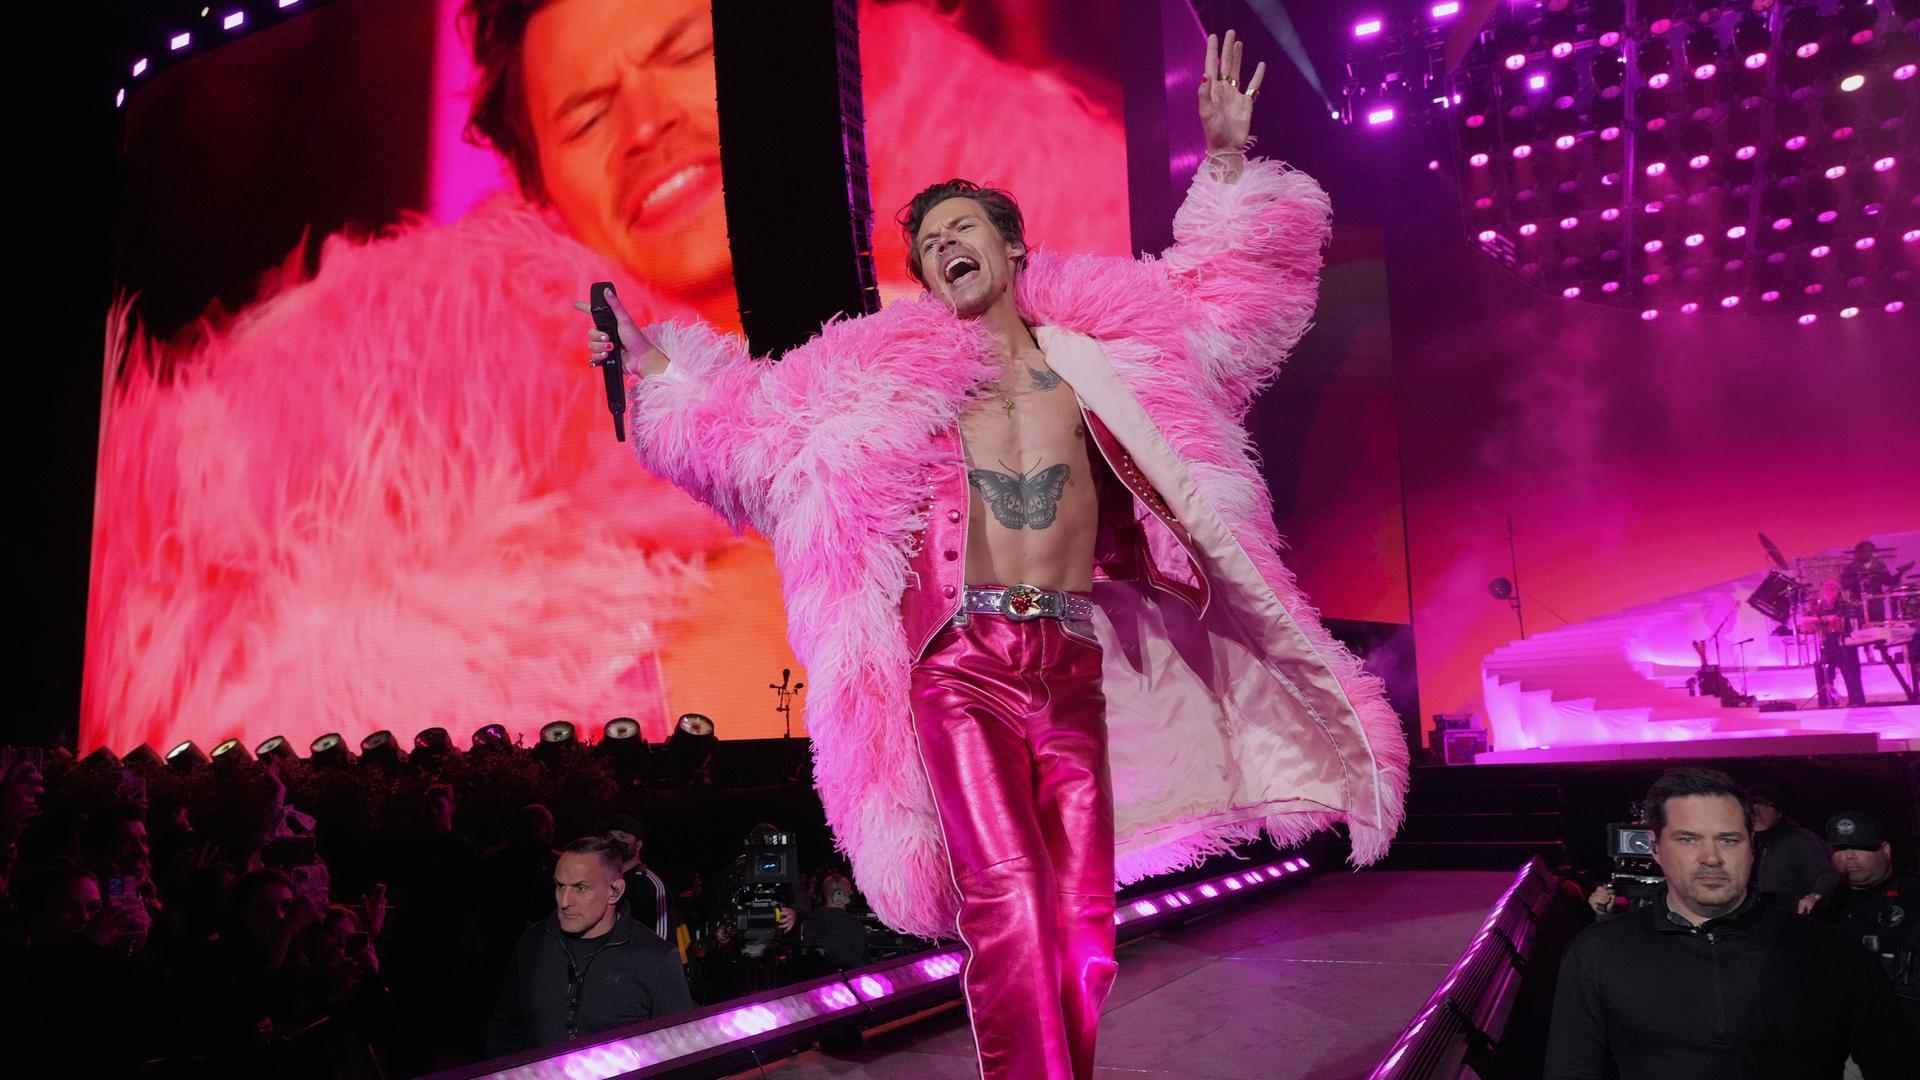 Harry Styles performt auf der Bühne. Er trägt einen Mantel aus pinkfarbenen Federn.